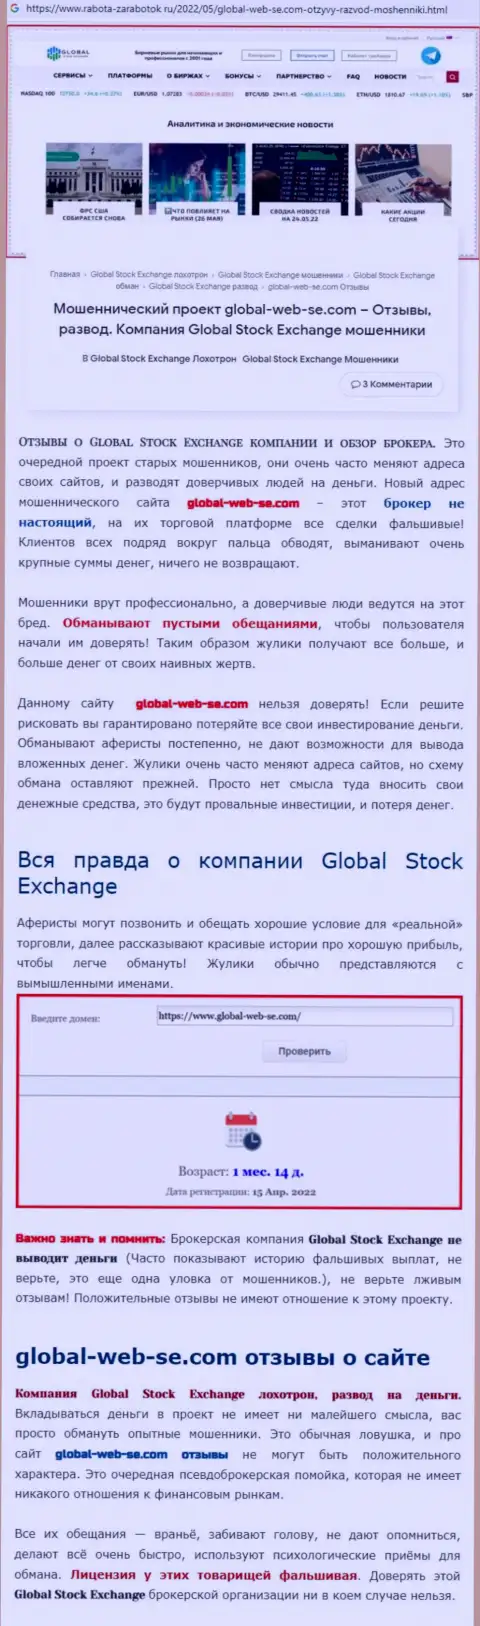 Автор обзора проделок сообщает о мошенничестве, которое постоянно происходит в конторе GlobalStock Exchange